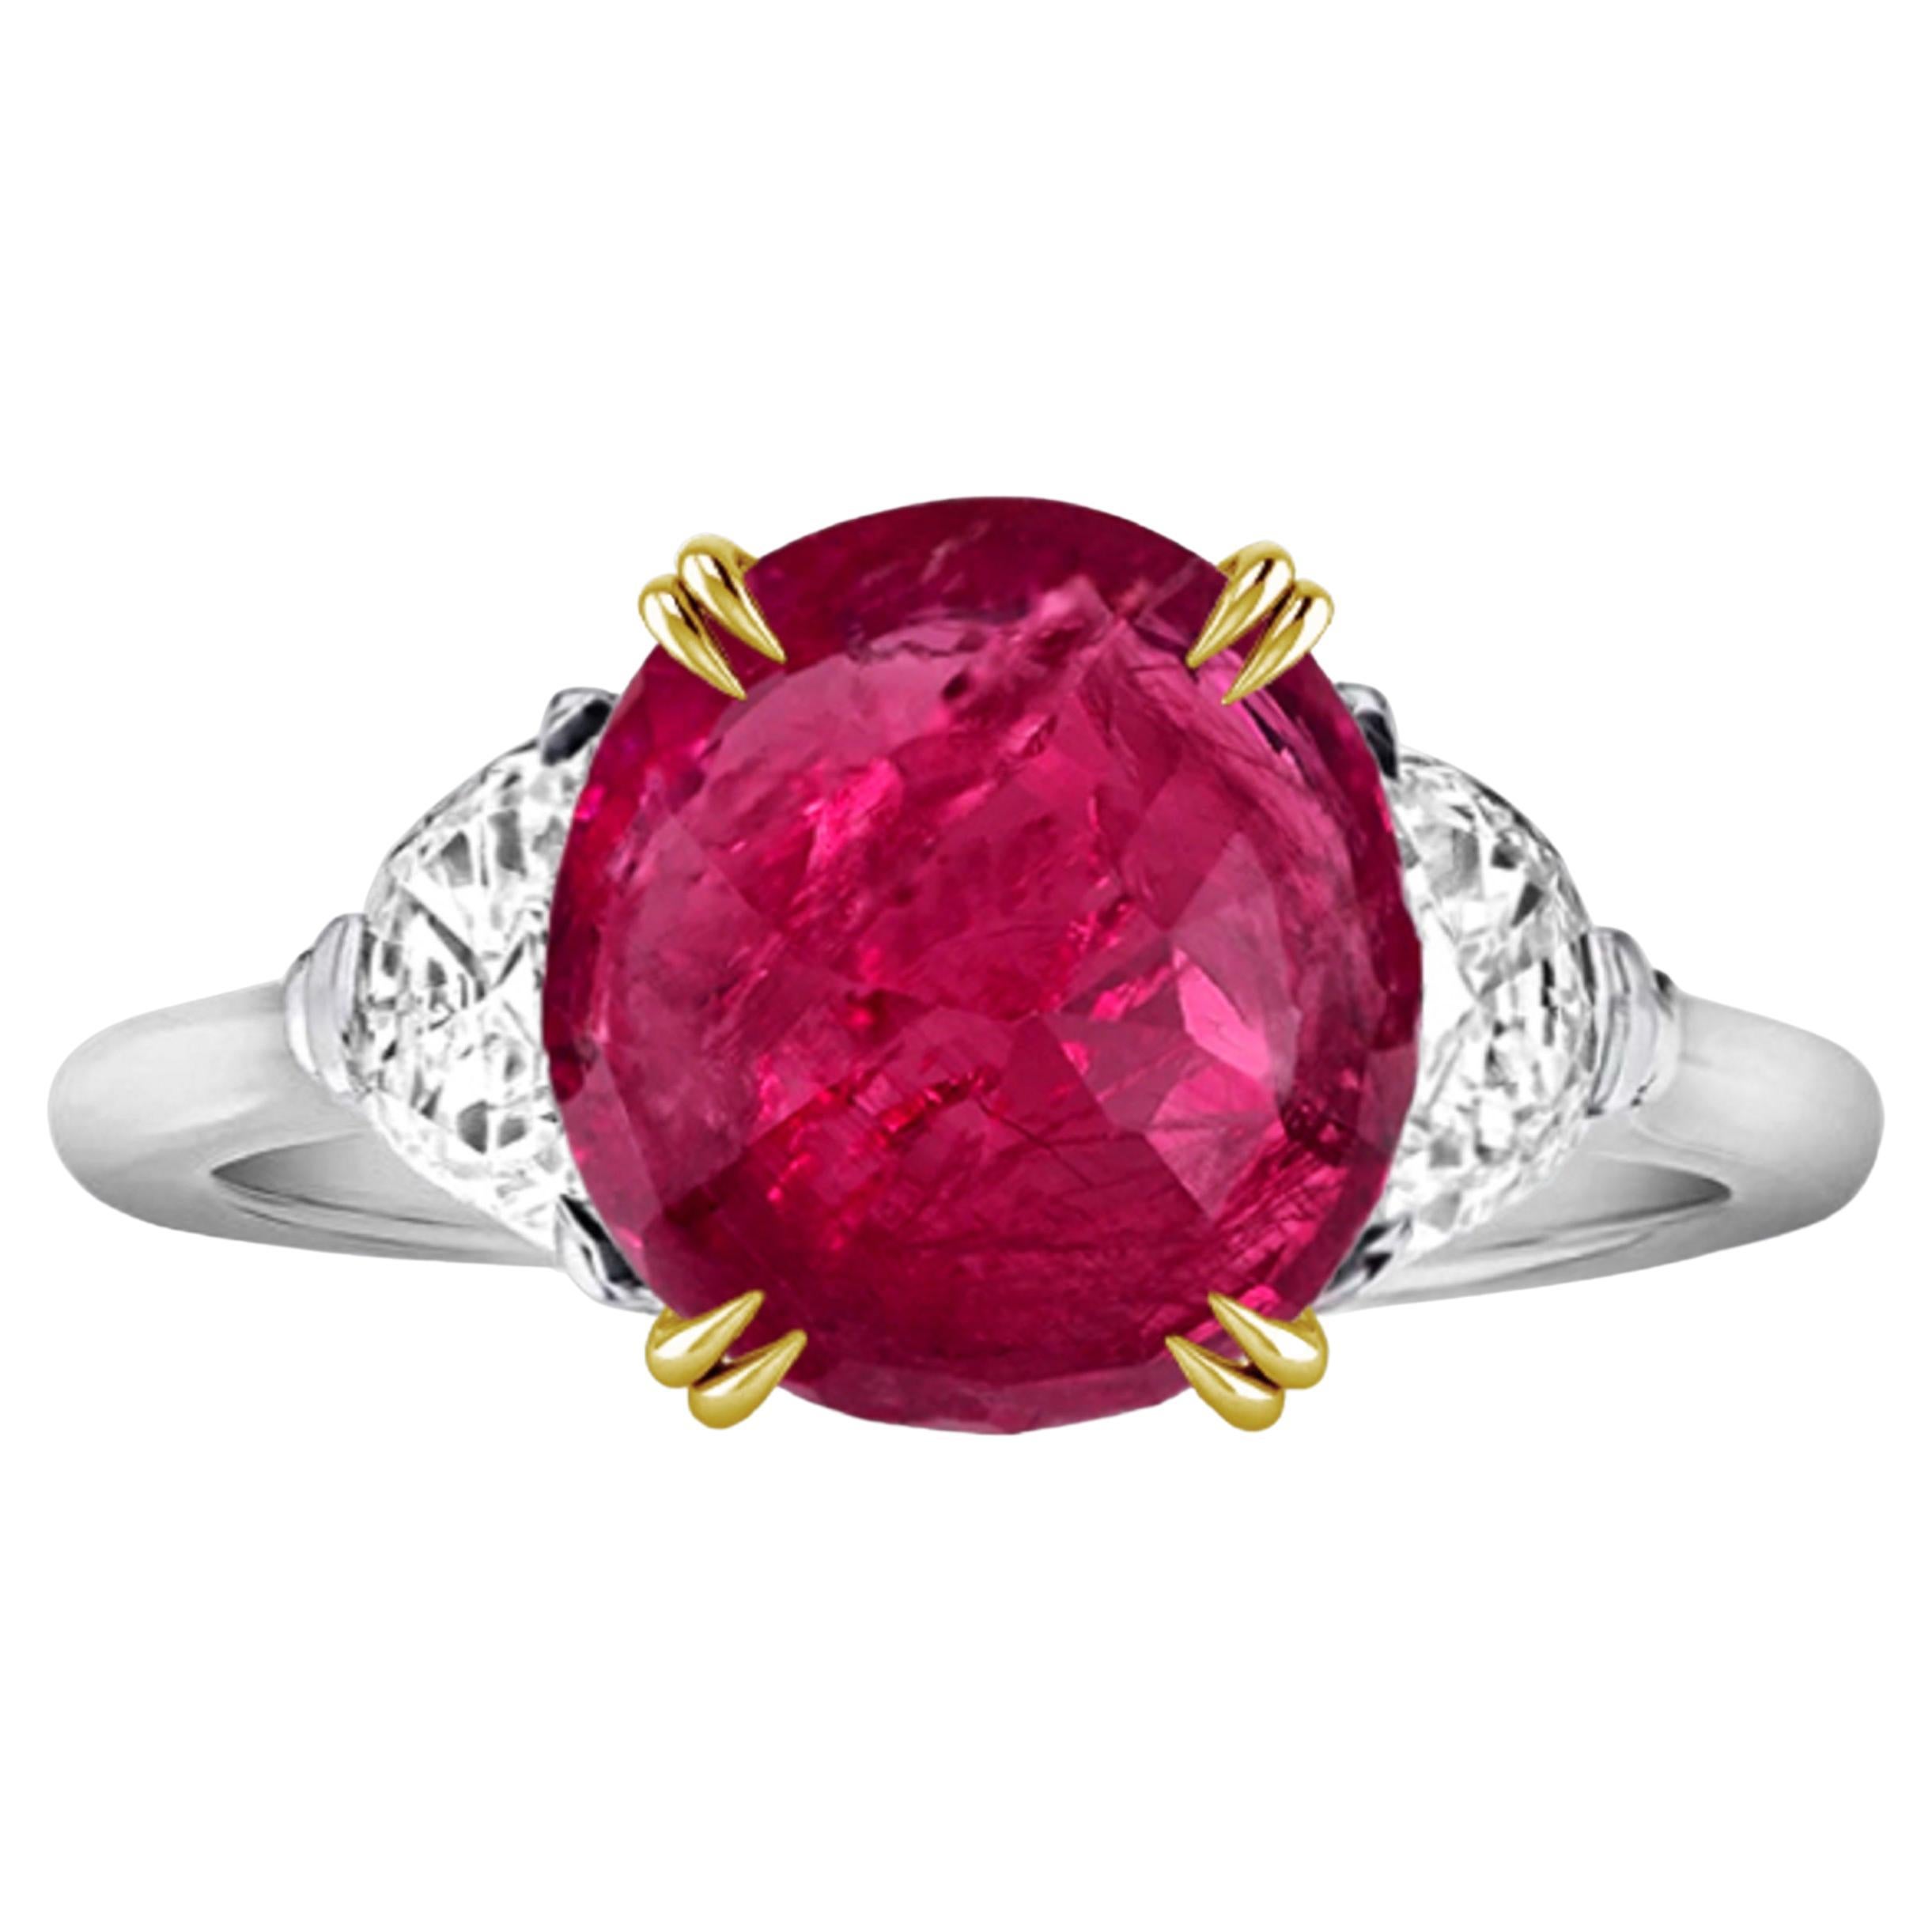 IGI 3 Carat No Heat Burma Ruby Diamond Ring